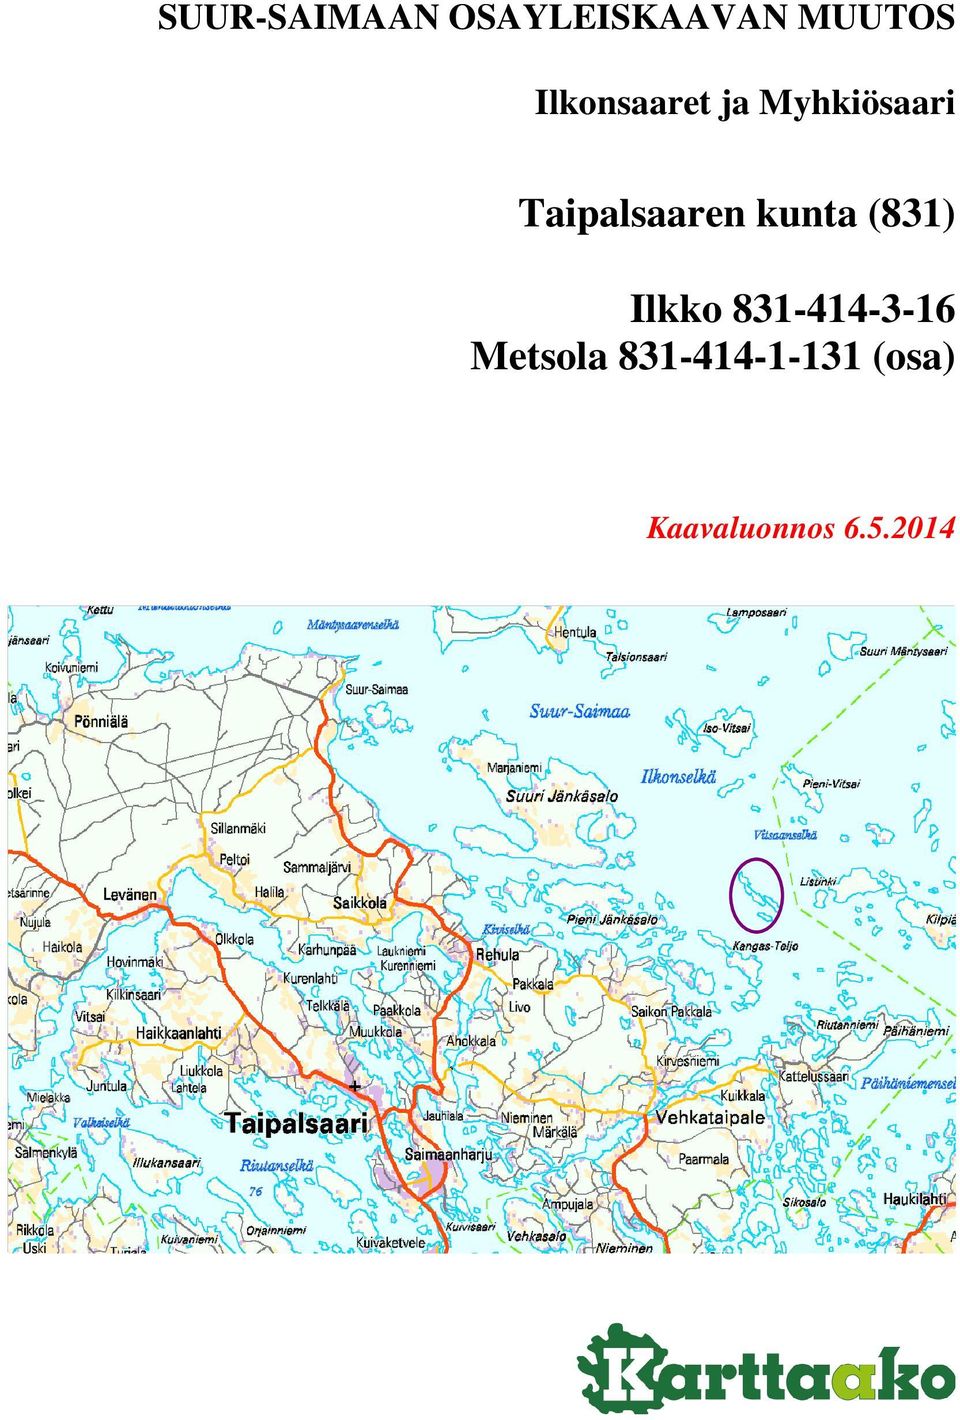 Taipalsaaren kunta (831) Ilkko